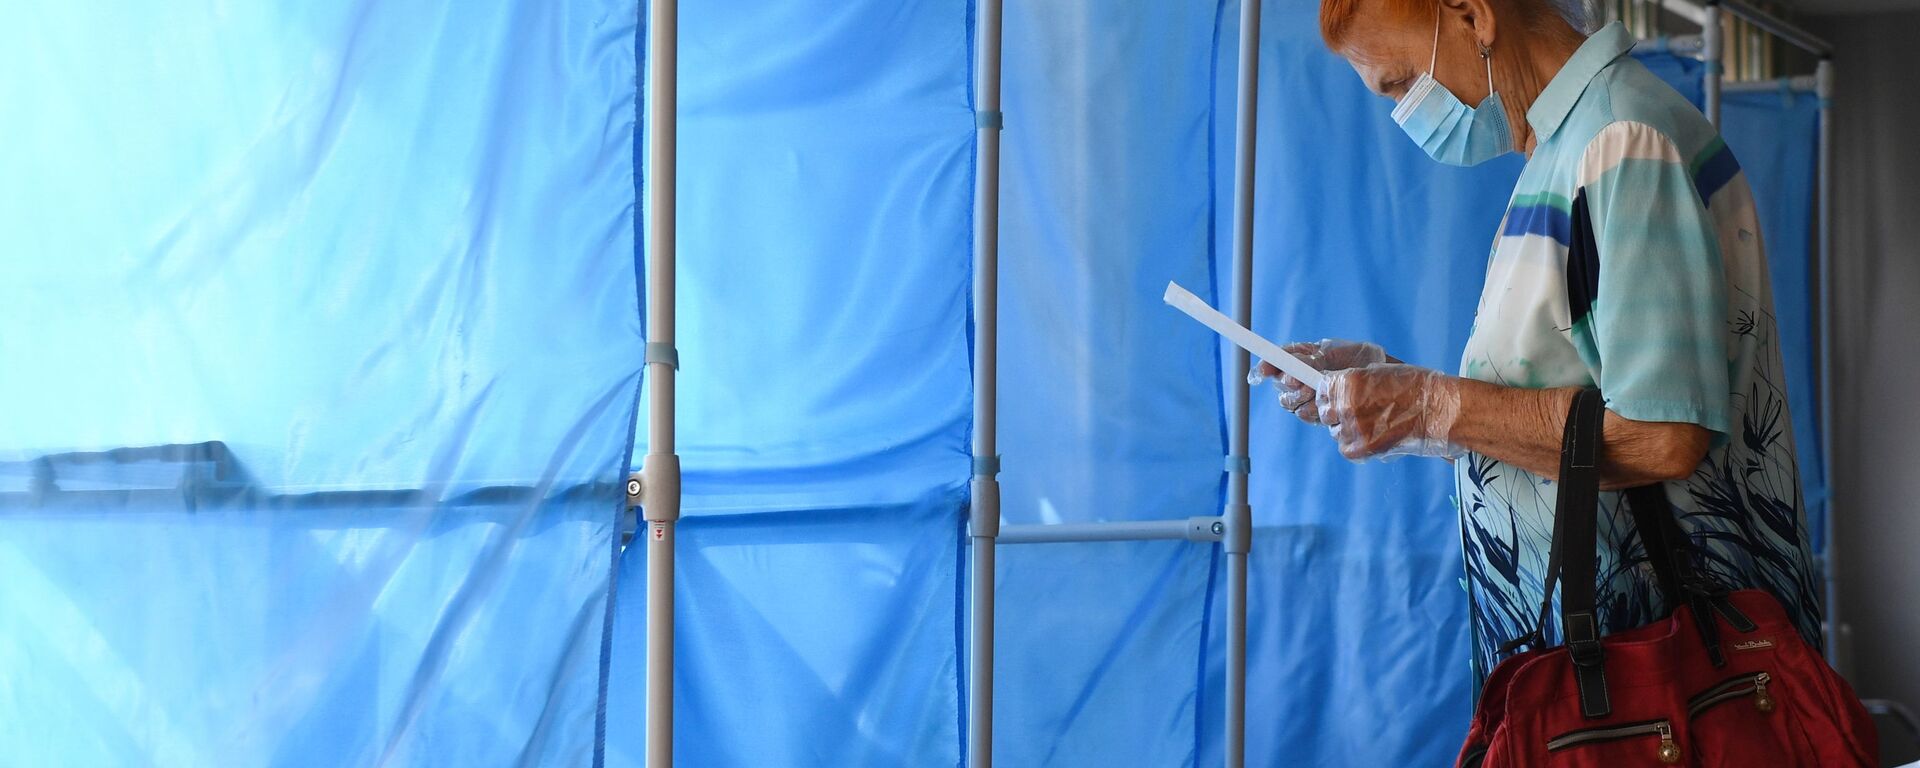 Женщина принимает участие в голосовании по внесению поправок в Конституцию РФ на избирательном участке №1503 в Новосибирске - Sputnik Узбекистан, 1920, 20.09.2021